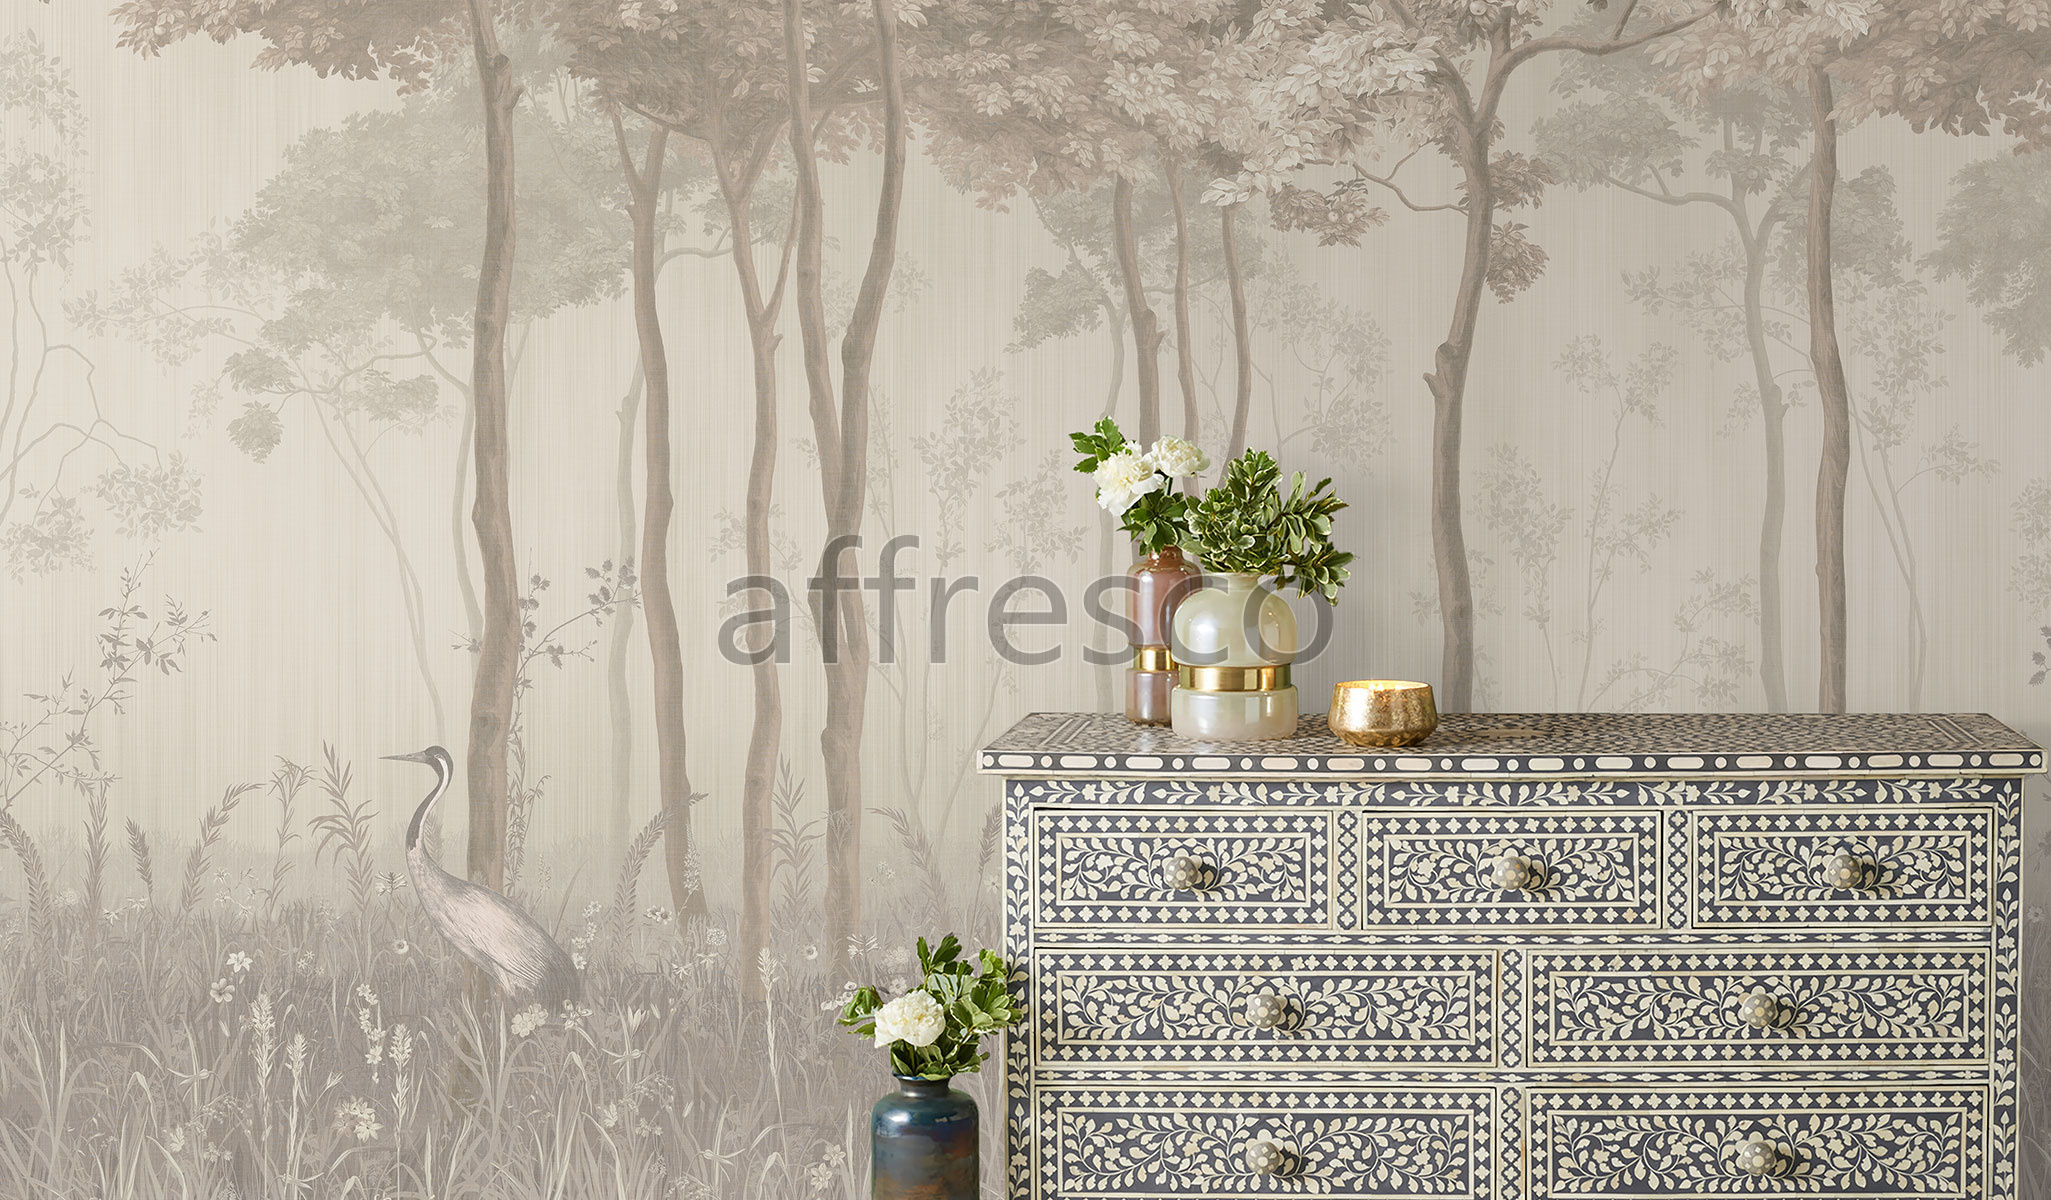 AF951-COL3 | Wallpaper part 1 | Affresco Factory